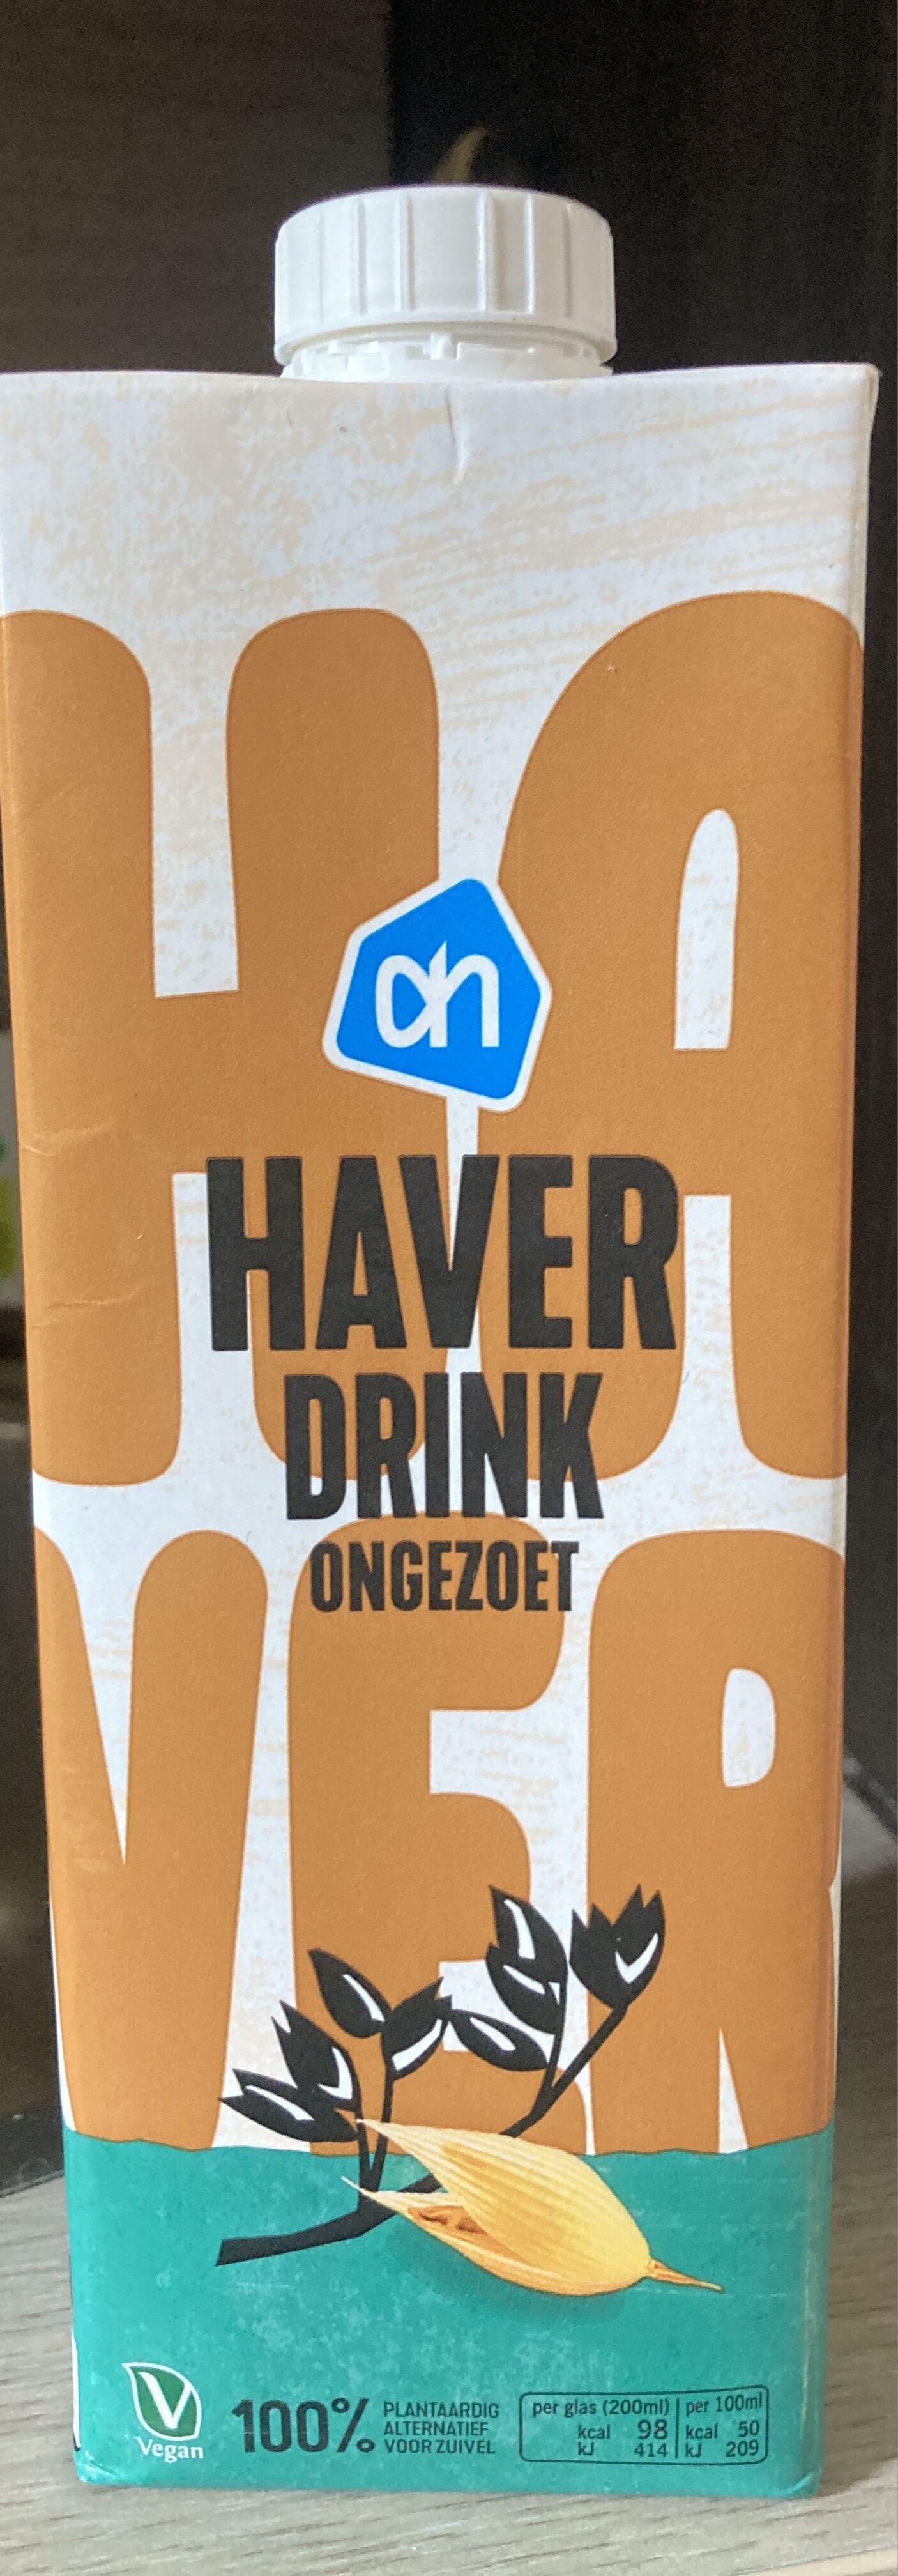 Zachte haver drink ongezoet - Product